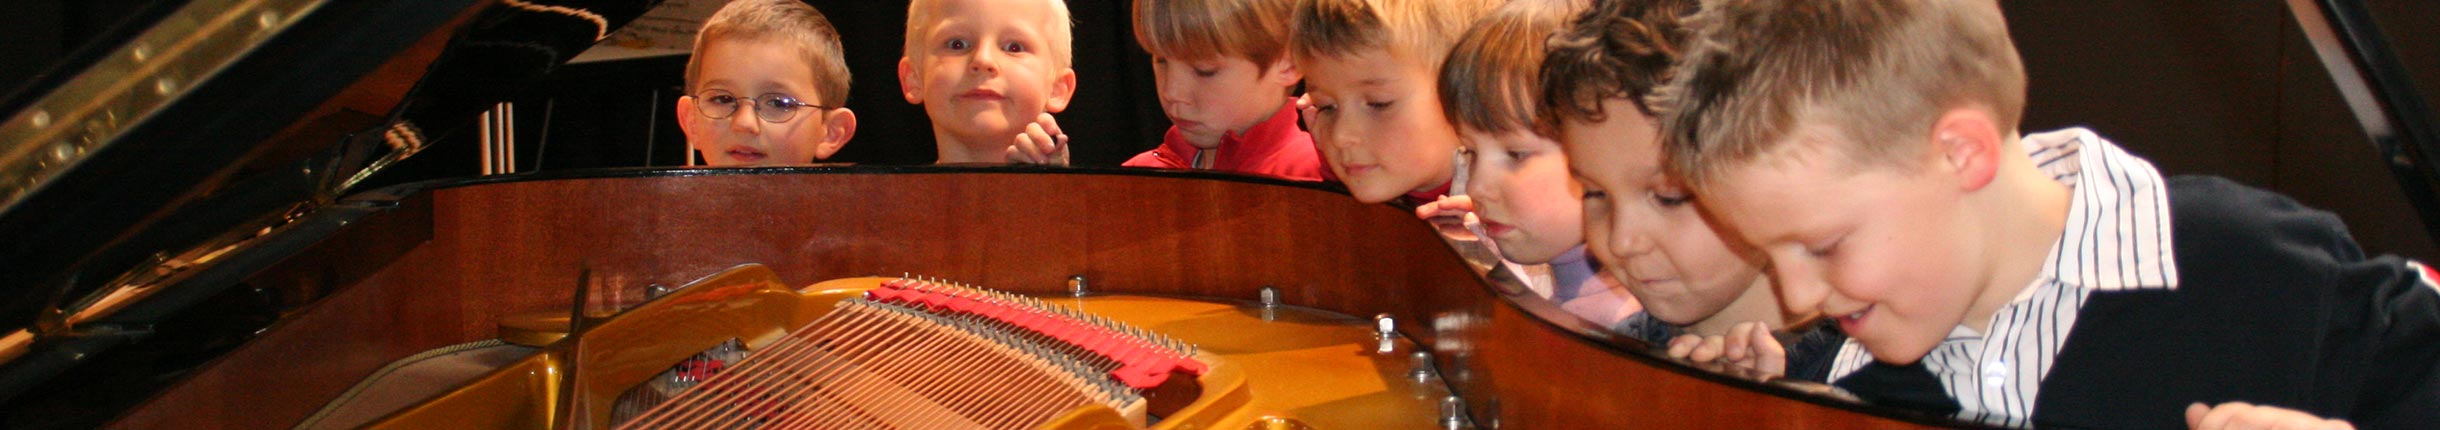 Sieben kleine Jungen schauen in ein geöffnetes Klavier.